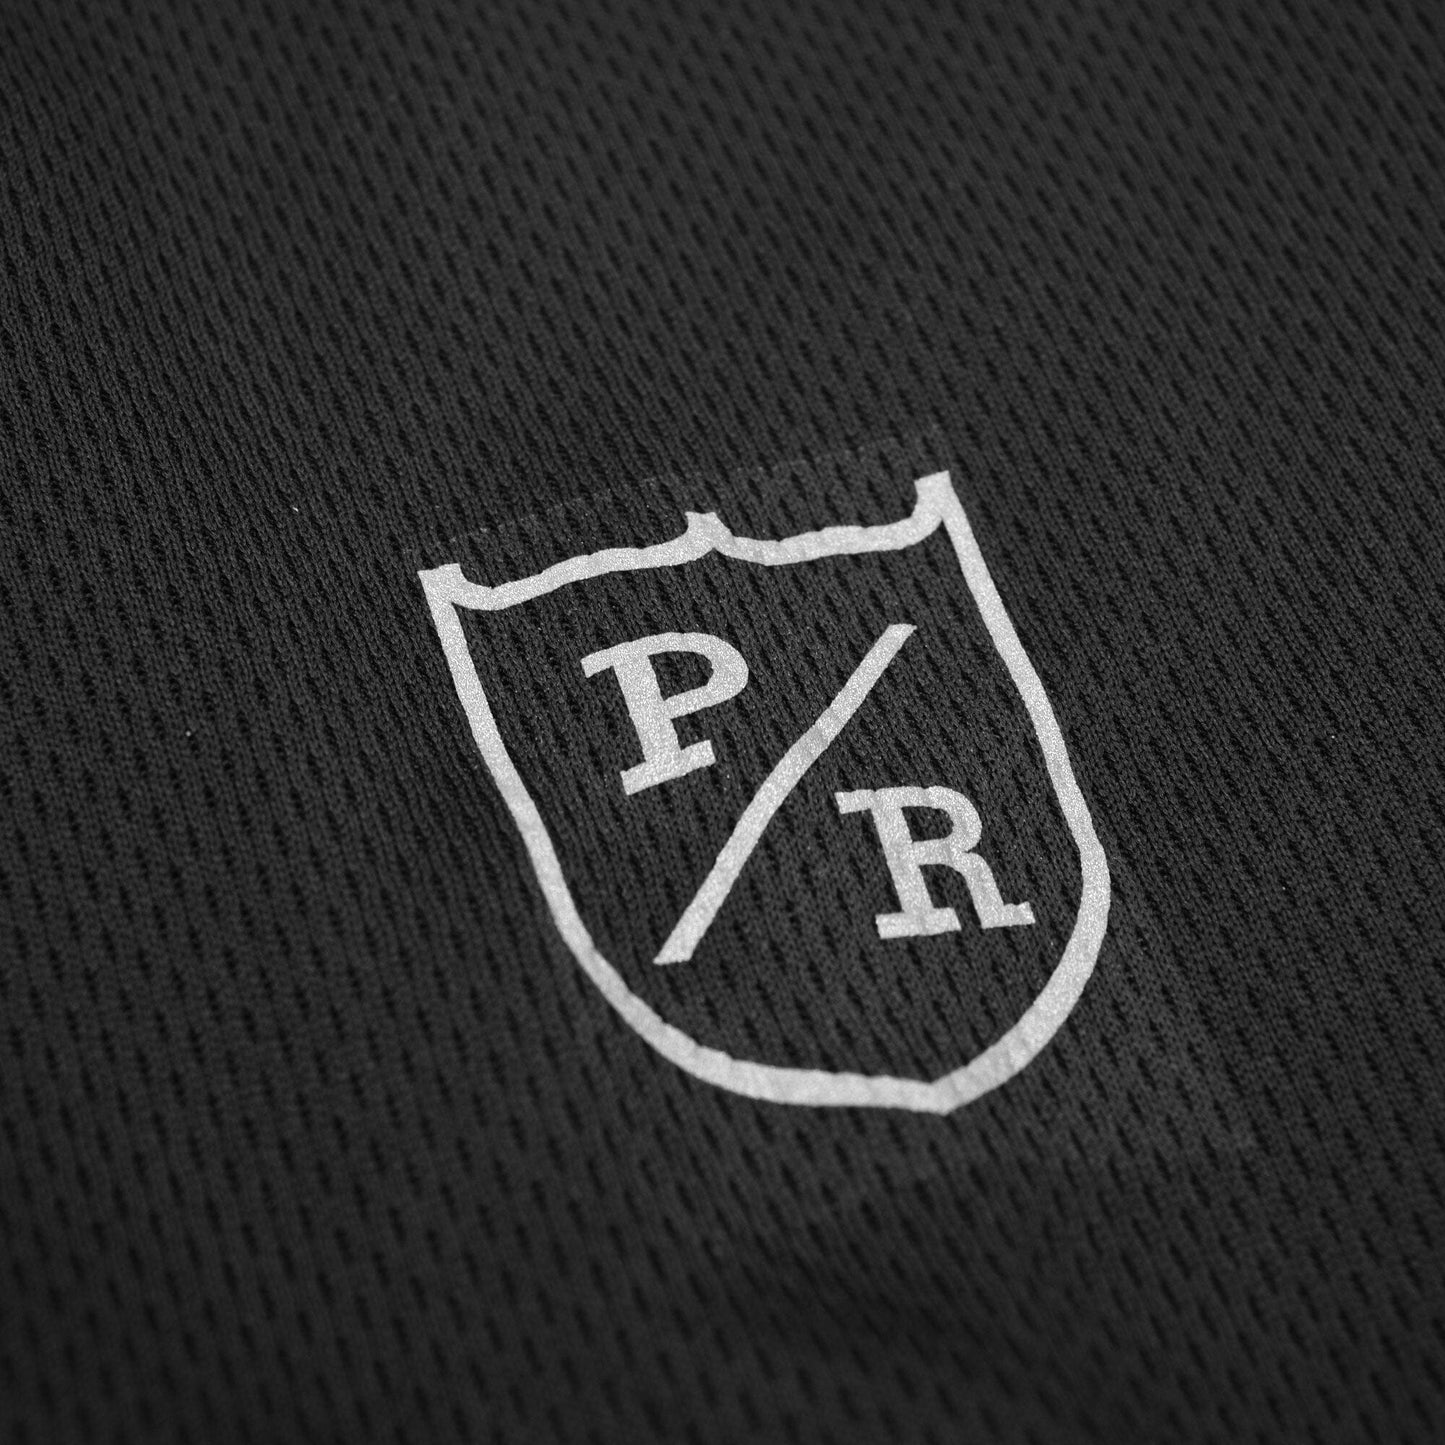 Polo Republica Men's PR Logo & Stripes Activewear Tee Shirt